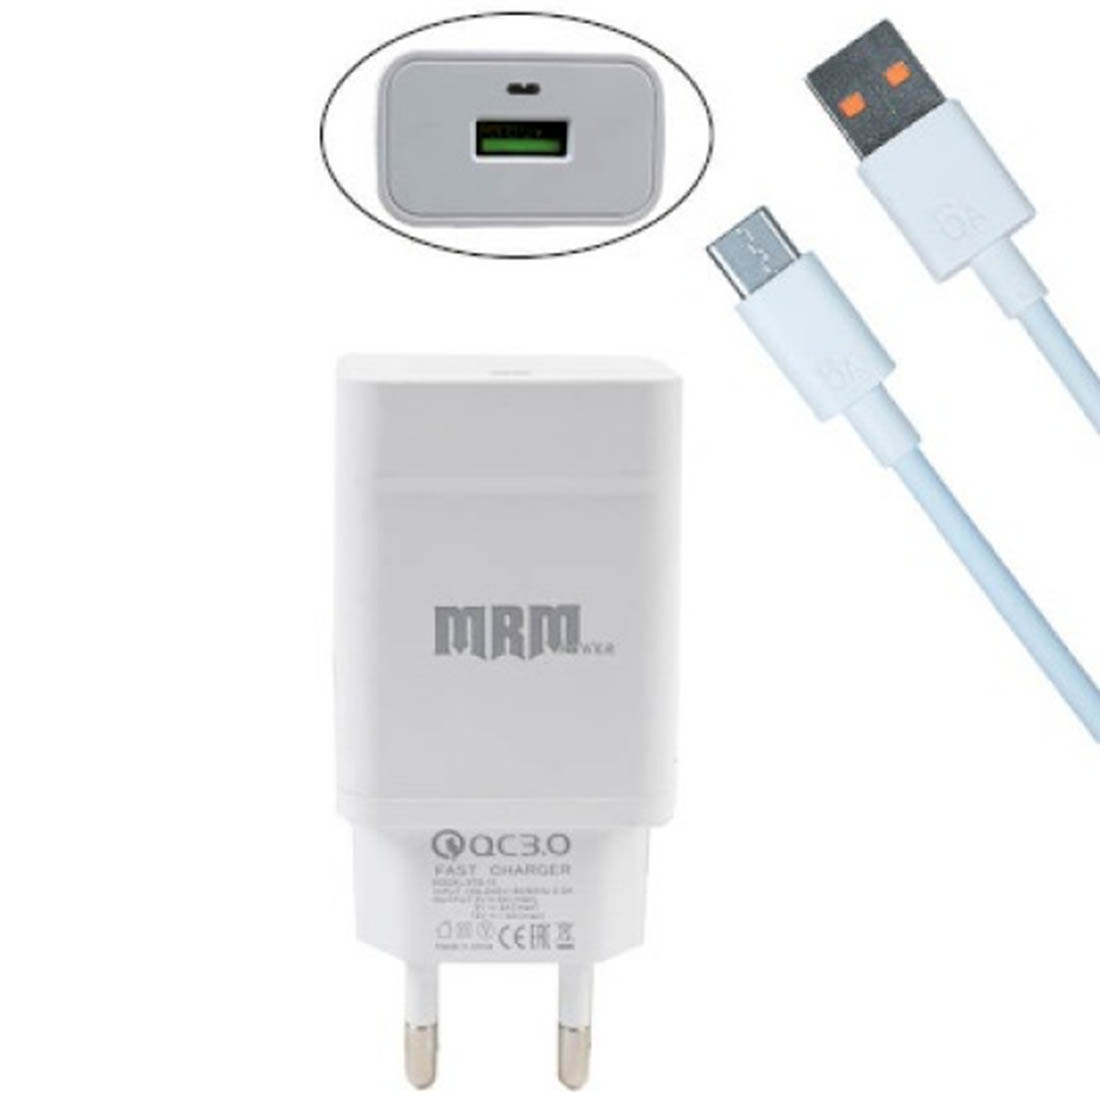 СЗУ (сетевое зарядное устройство) MRM S50t комплект 2 в 1, 1 USB, QC3.0 с кабелем Type C, цвет белый